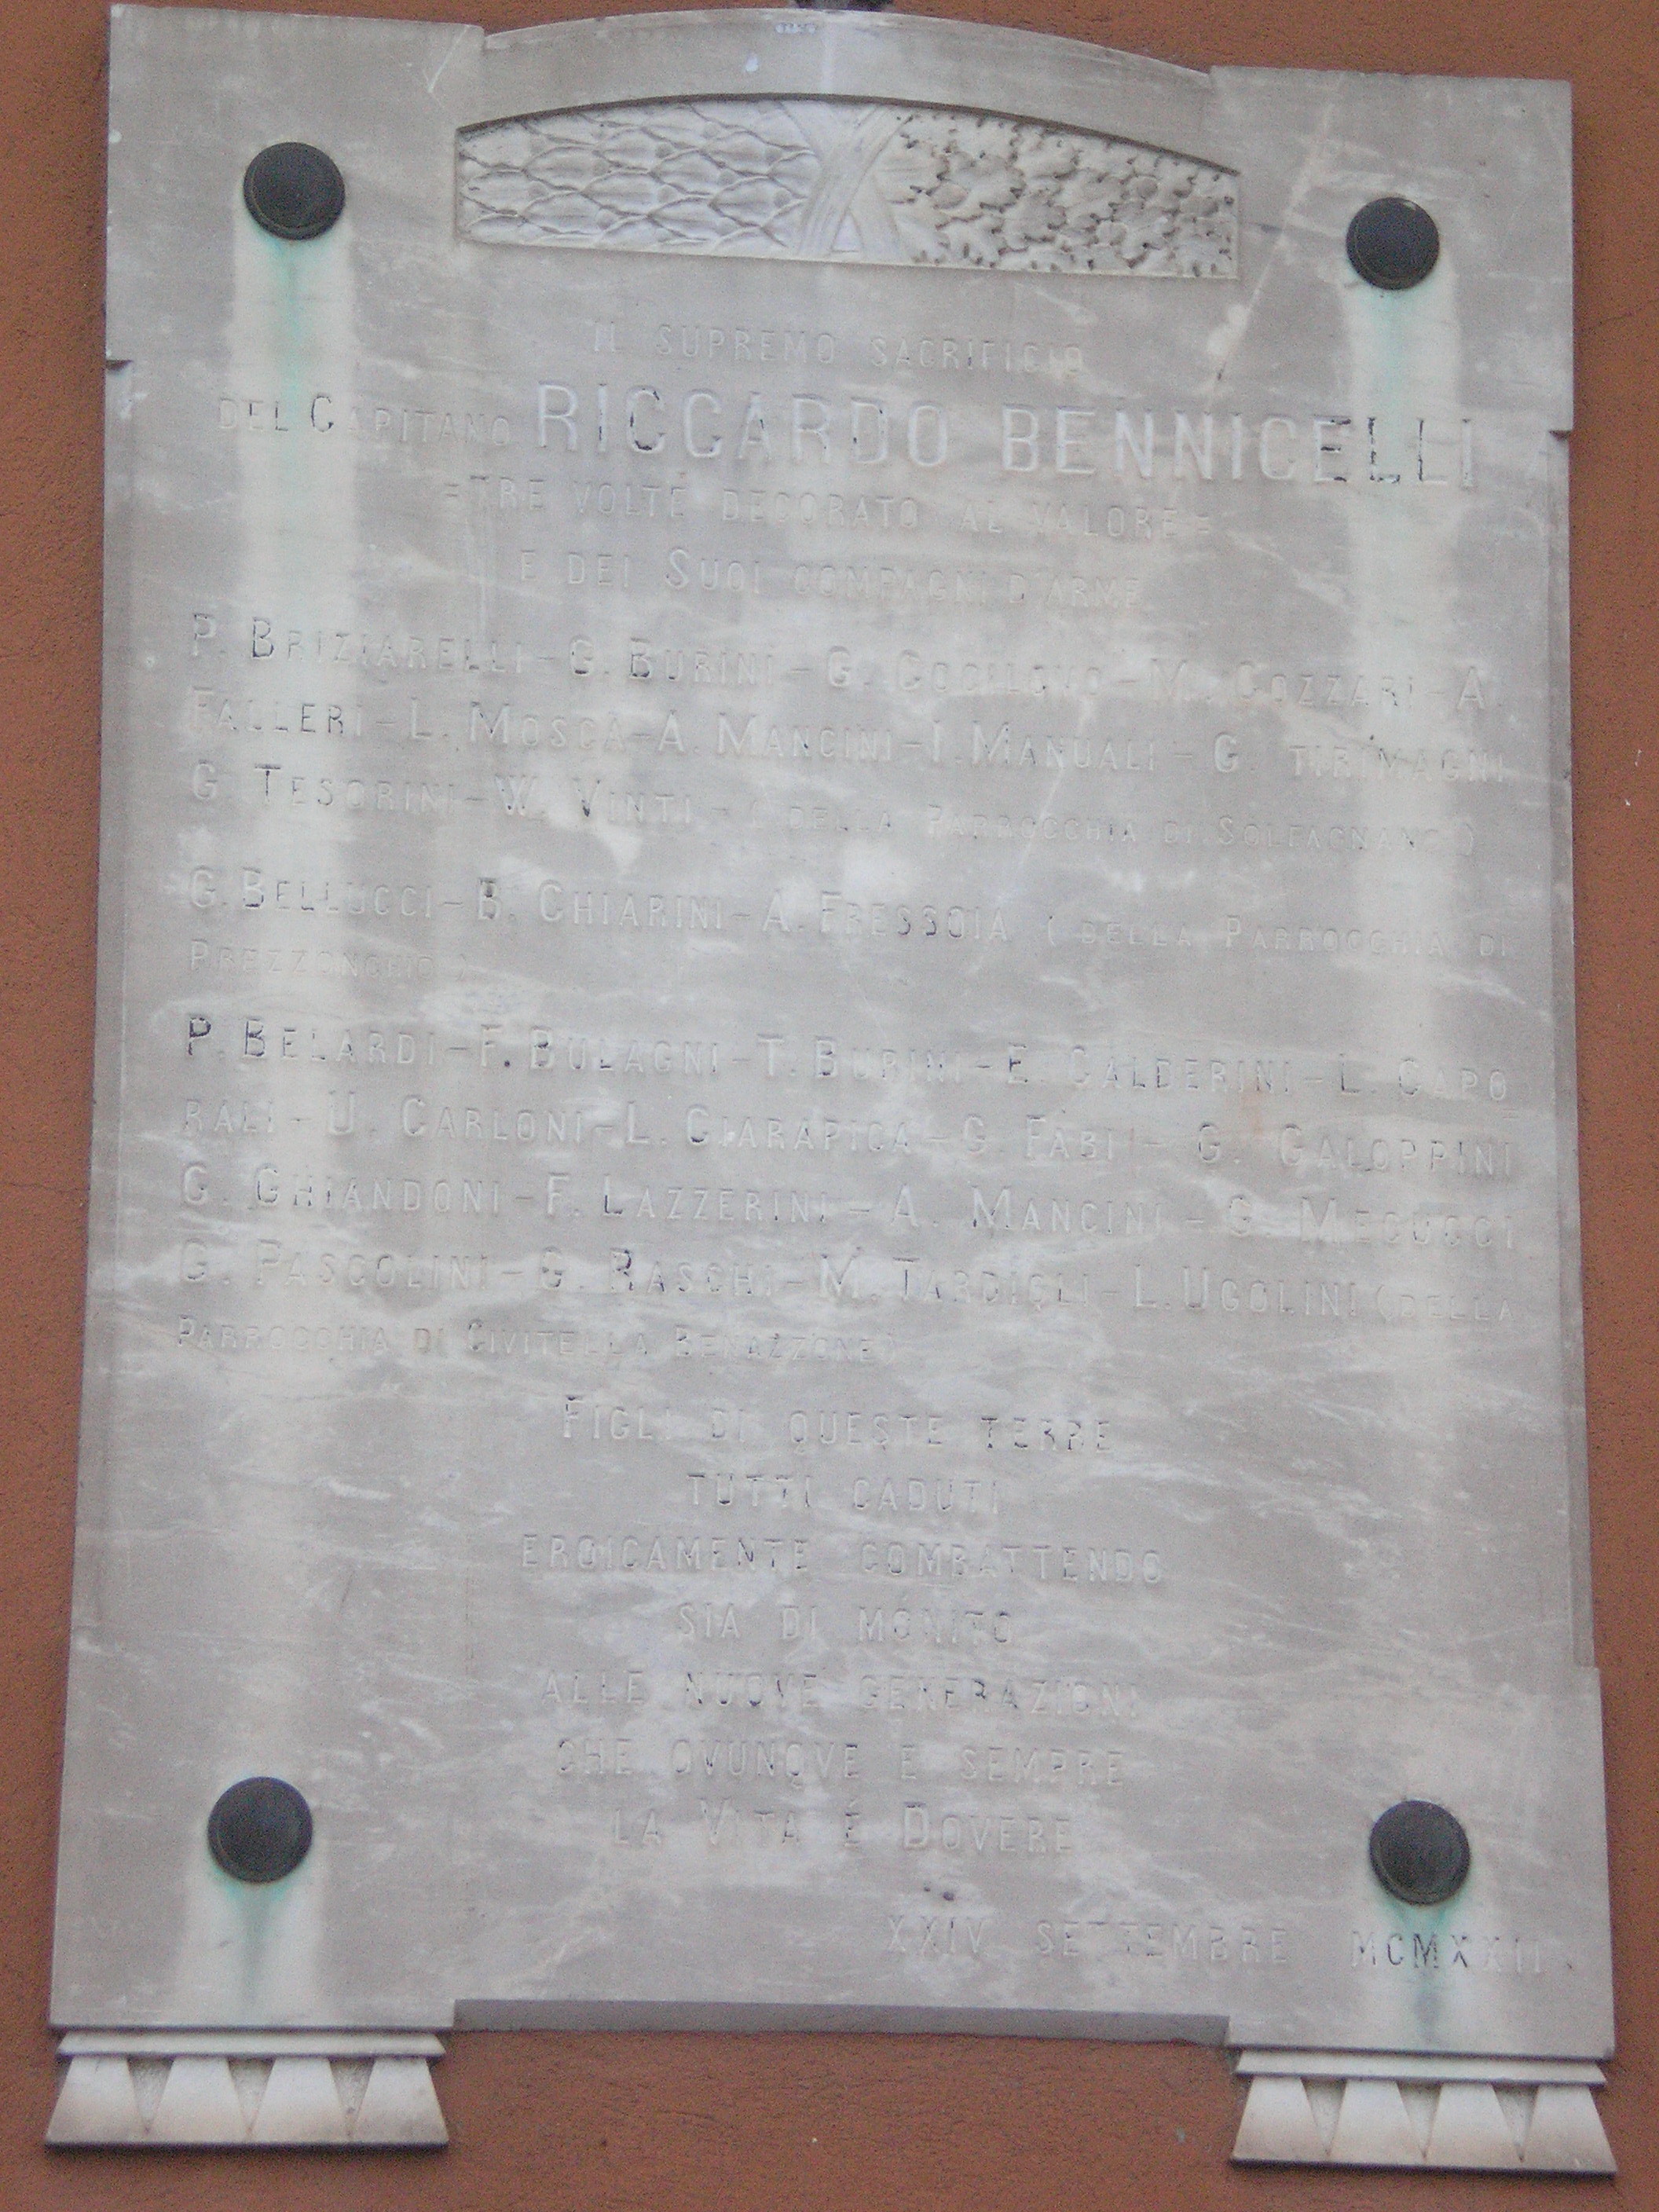 lapide commemorativa ai caduti, opera isolata - ambito Italia centrale (primo quarto sec. XX)